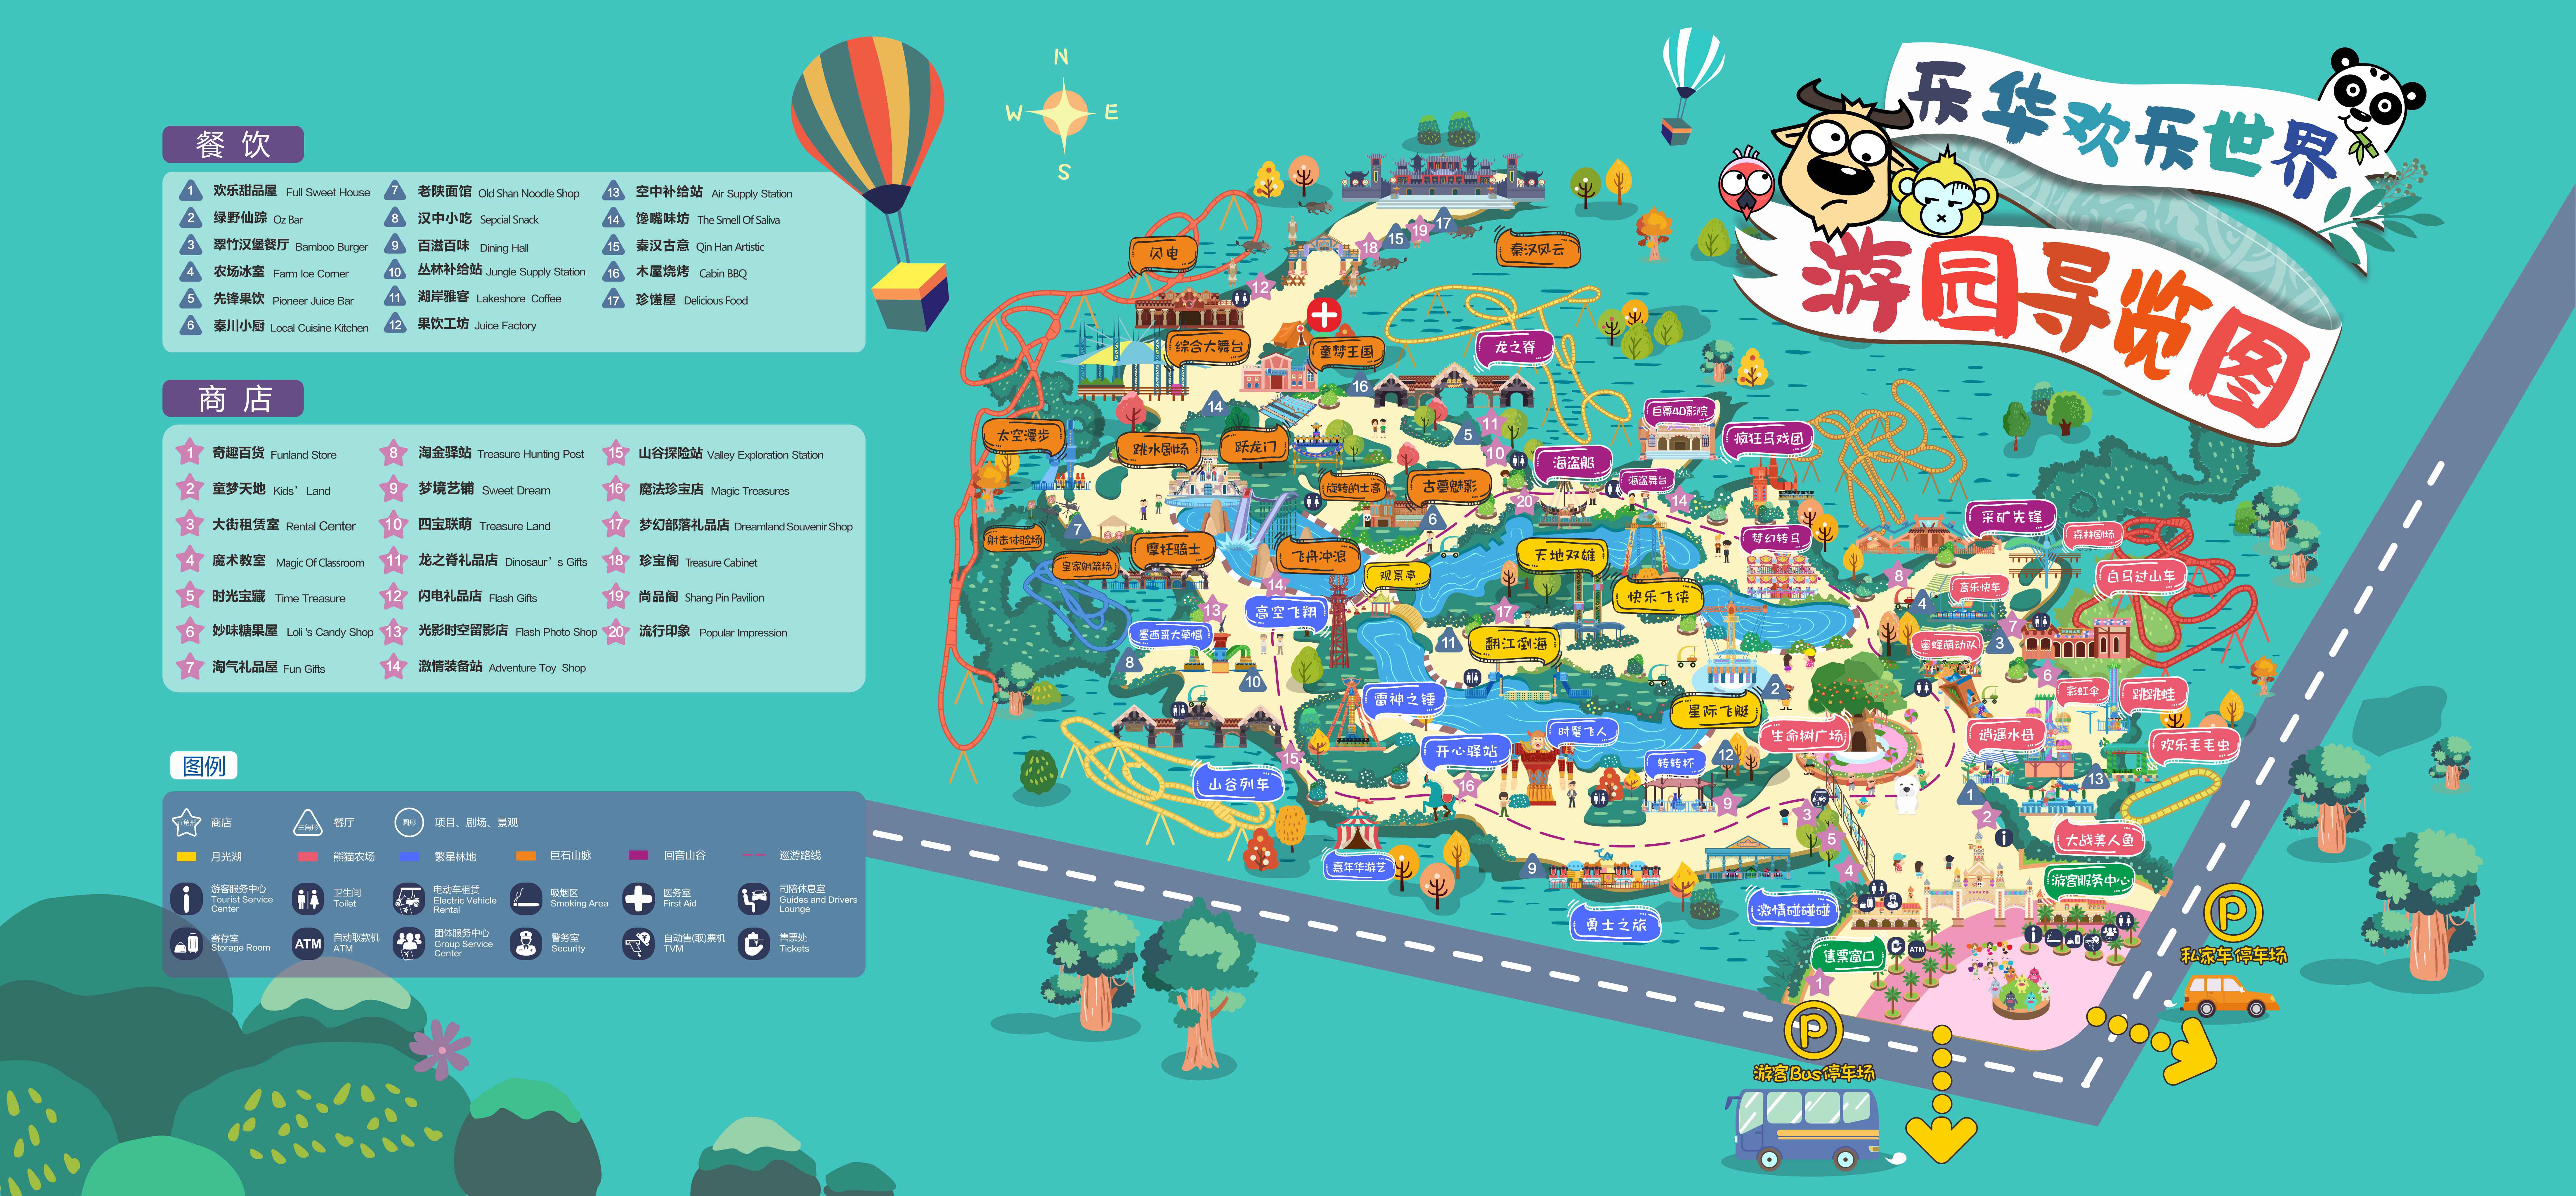 乐华欢乐世界内部地图图片